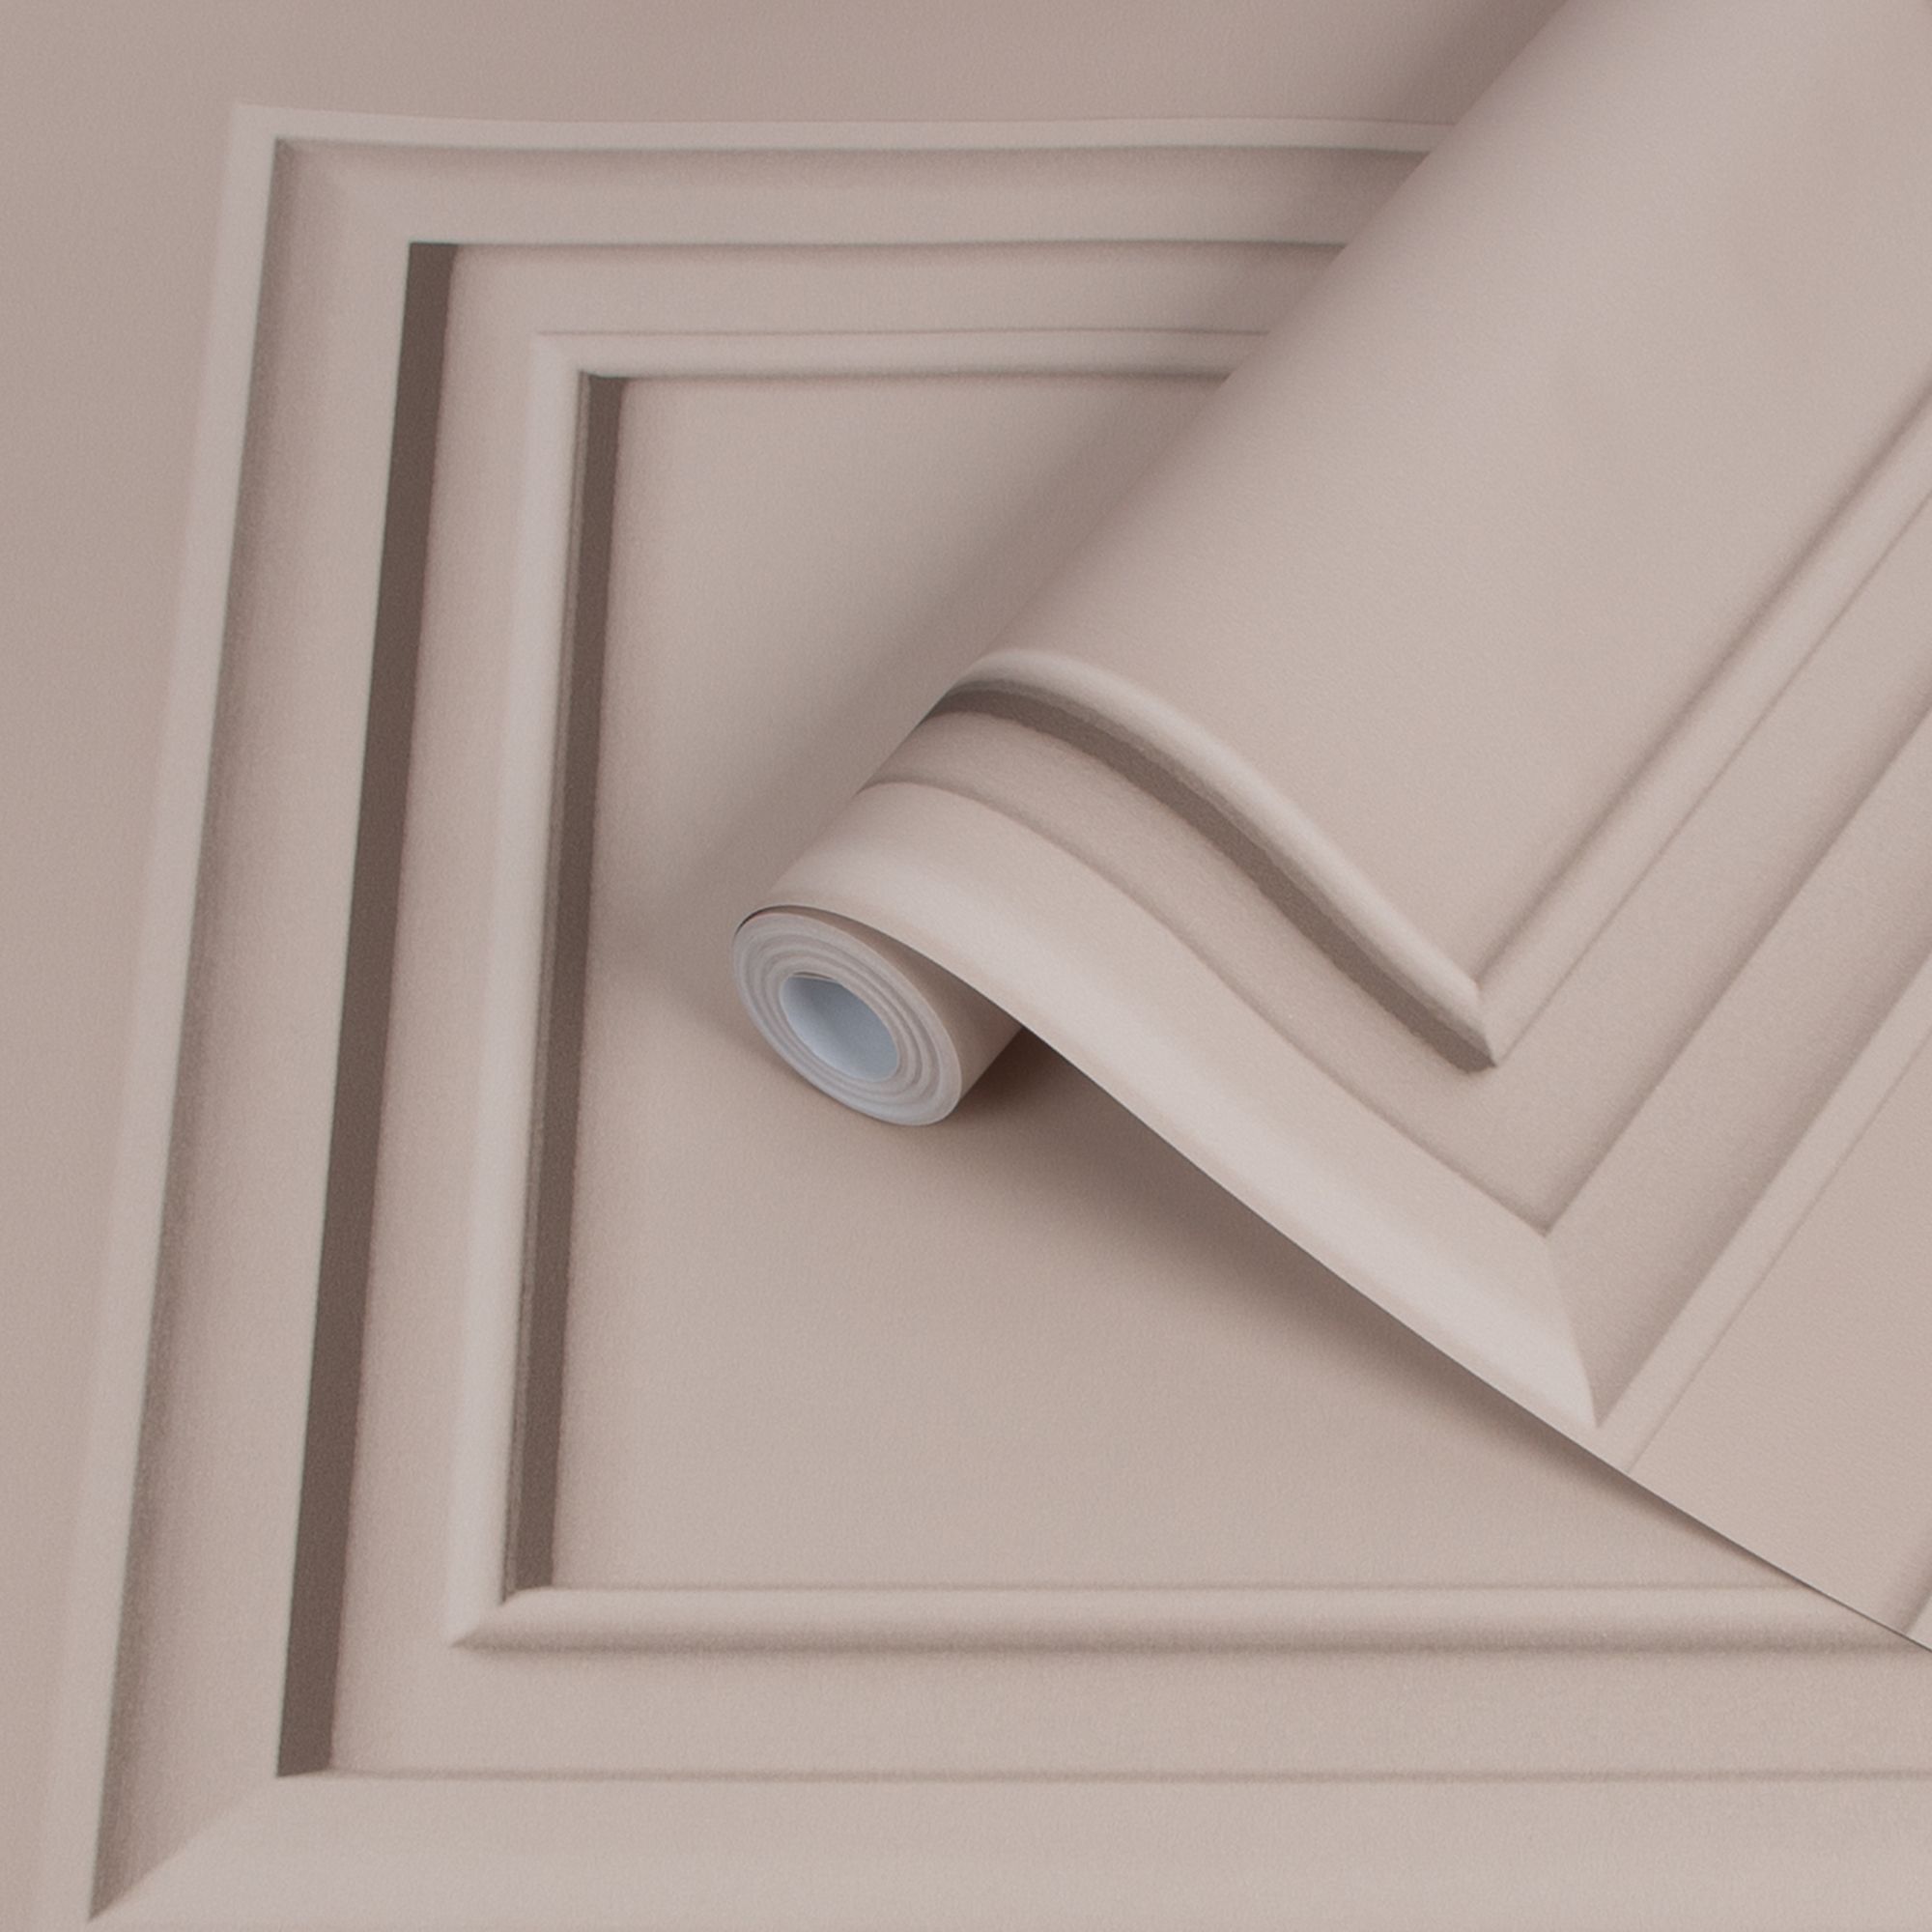 Với giấy dán tường màu hồng nhạt có hiệu ứng vân gỗ - Superfresco Easy Blush Panel Wood effect Smooth Wallpaper, bạn có thể tạo nên một không gian nữ tính, tinh tế và ấm cúng. Màu sắc nhẹ nhàng sẽ giúp tạo ra không gian đầy dịu dàng và thoải mái. Đừng bỏ qua cơ hội trang trí căn phòng của bạn với sản phẩm giấy dán tường độc đáo này!